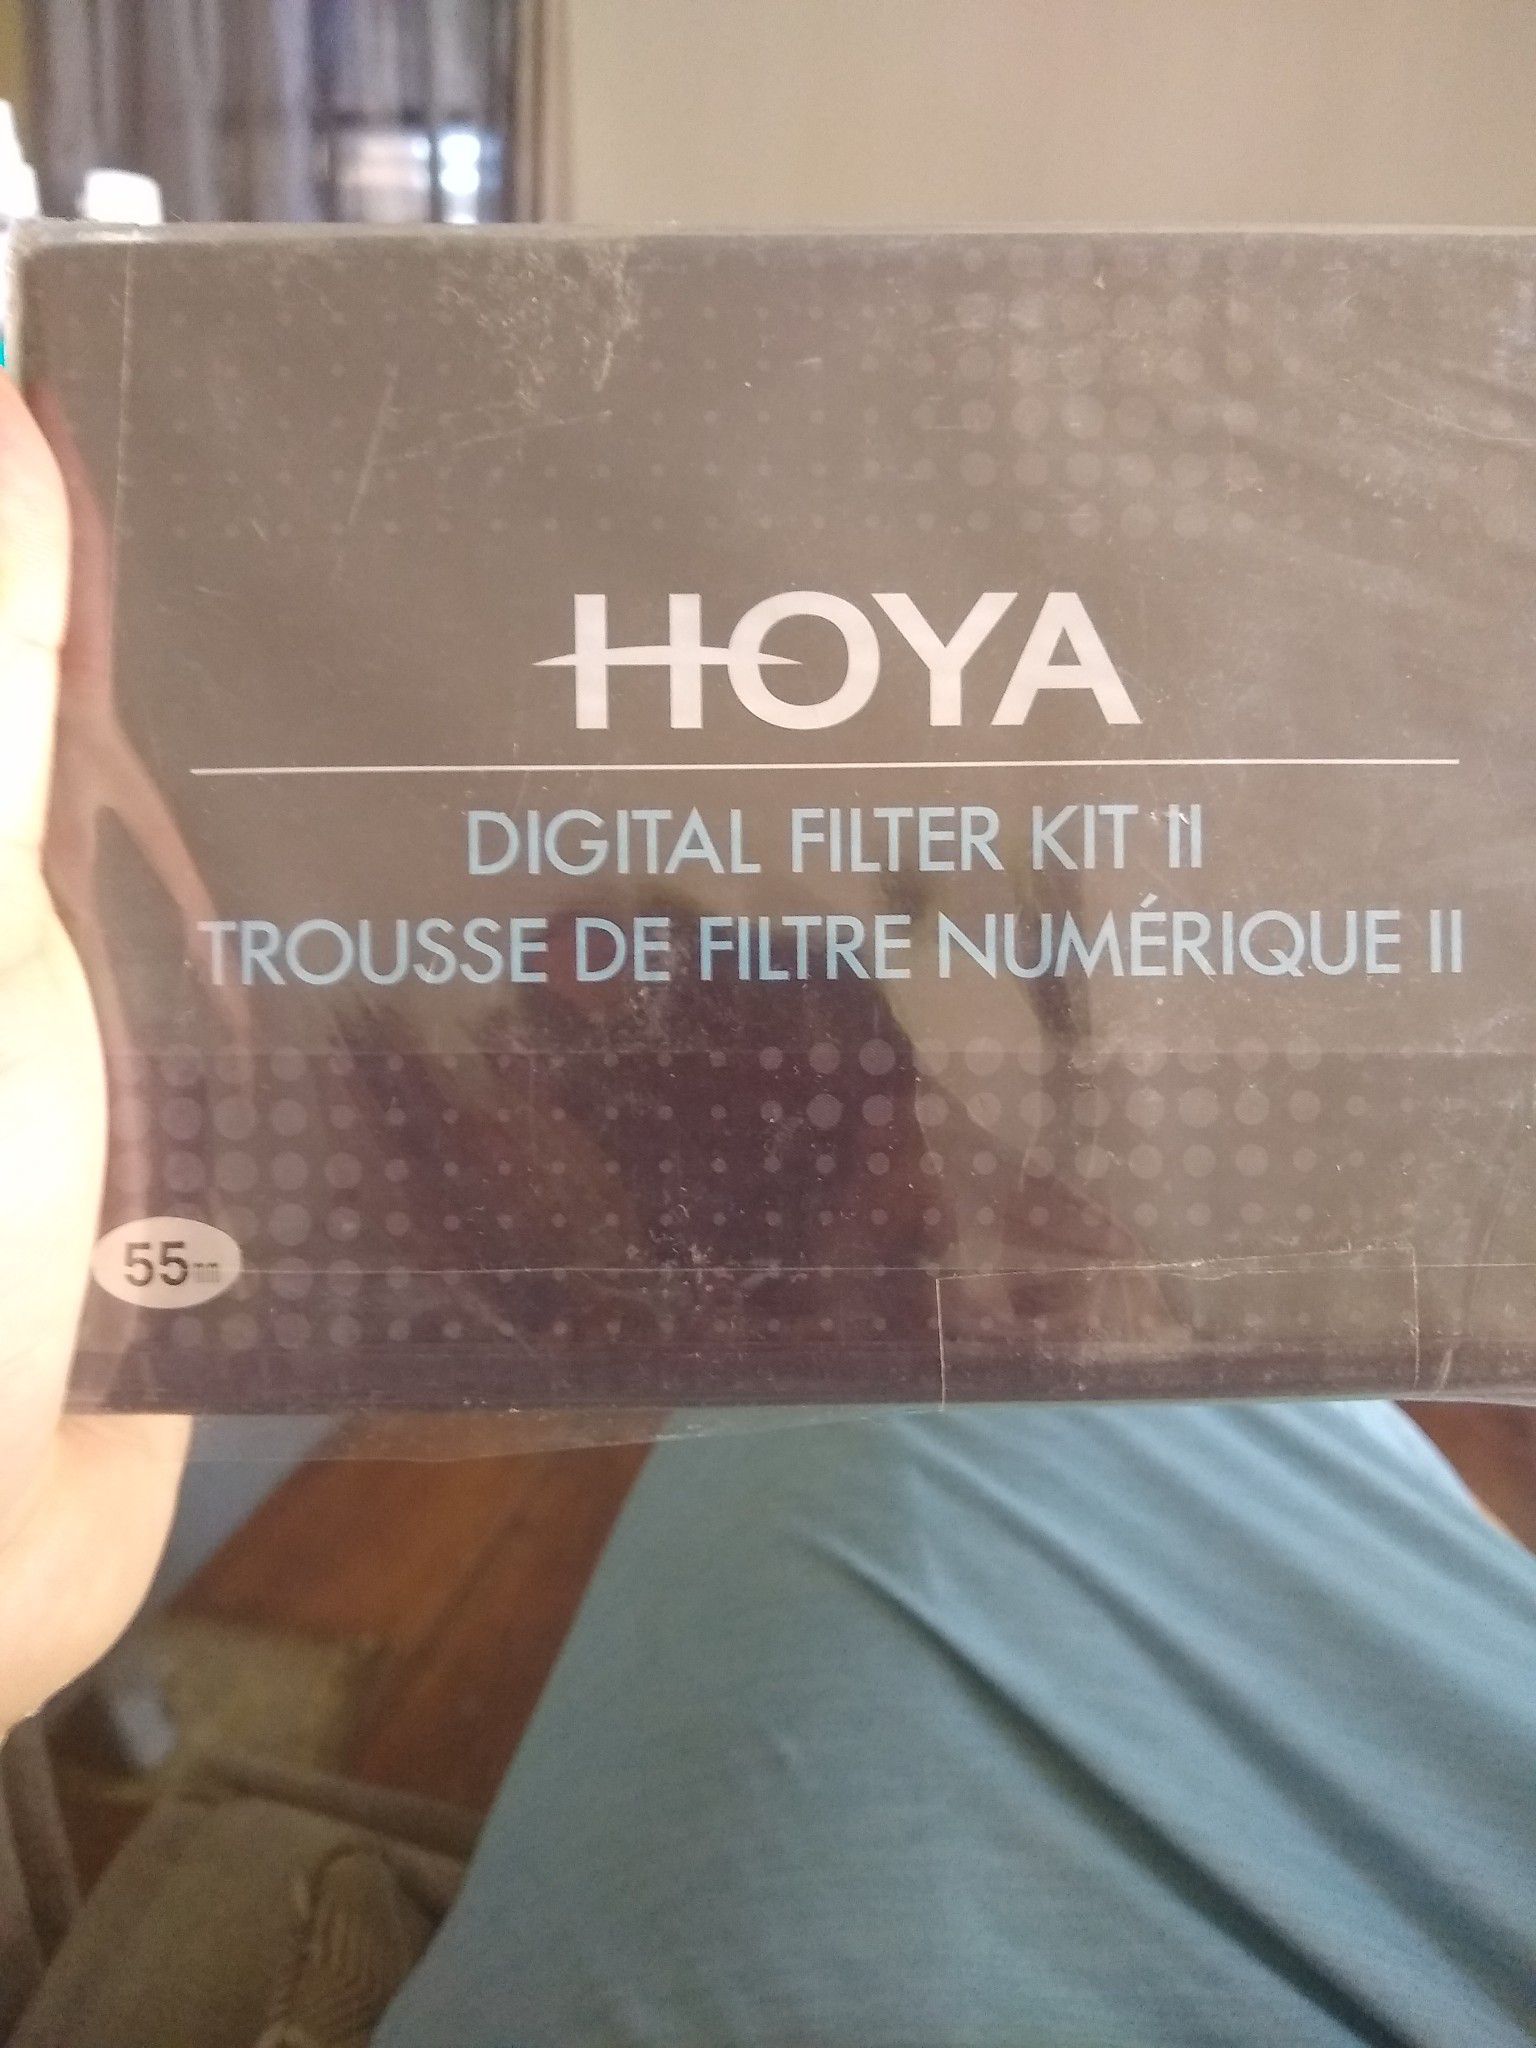 Hoya 55 mm Filter Kit II Digital for Lens